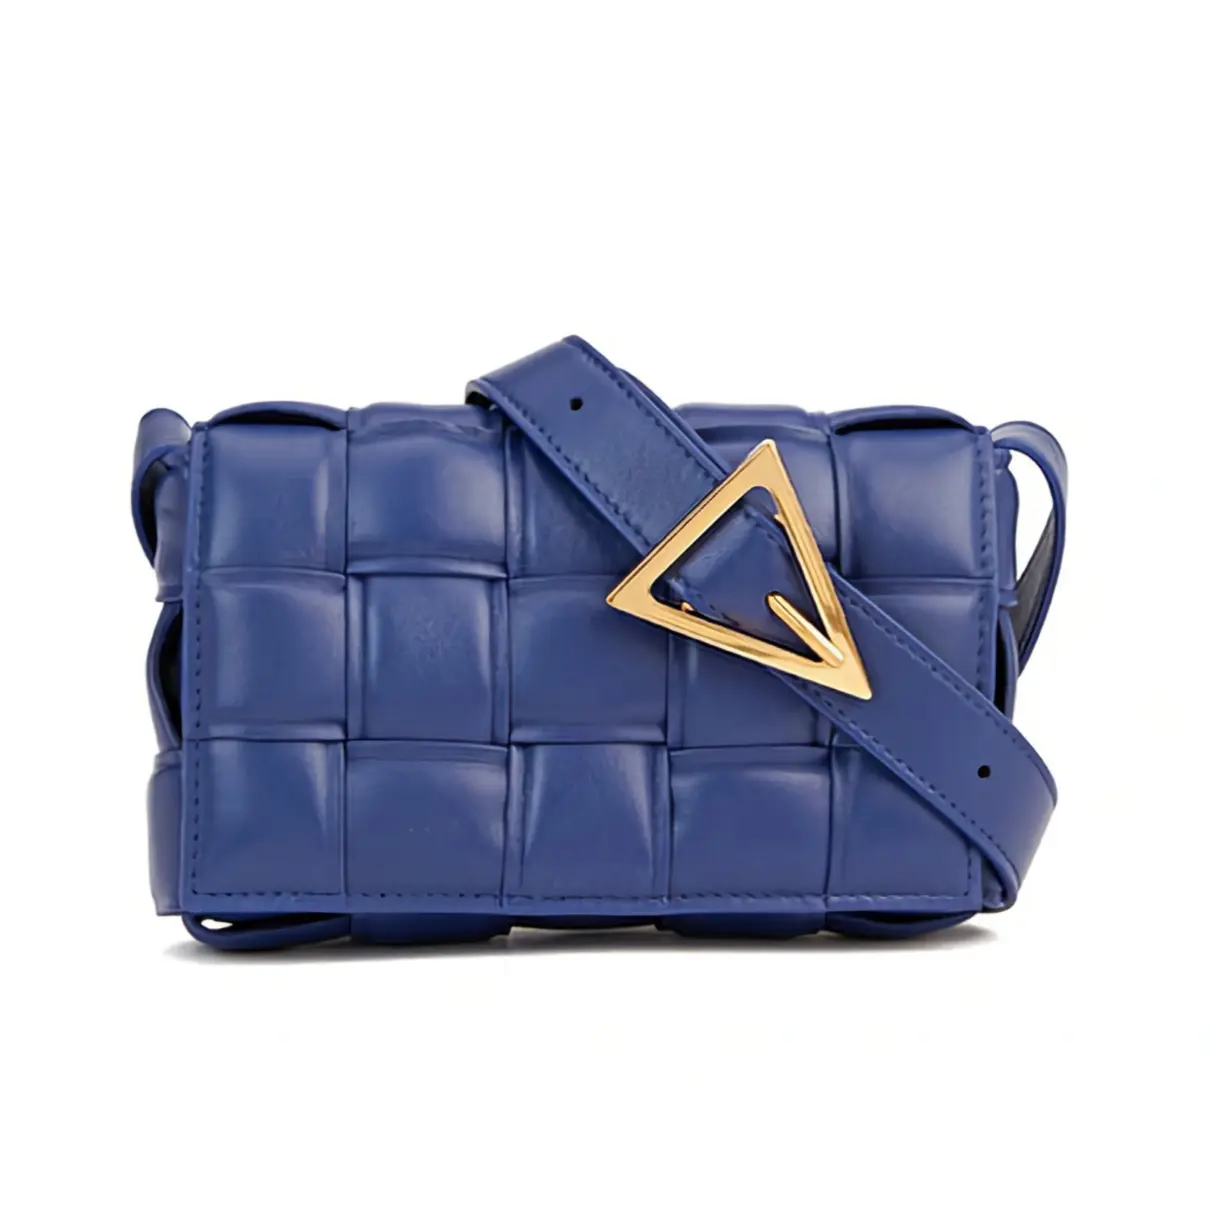 Buy Bottega Veneta Cassette Padded leather handbag online